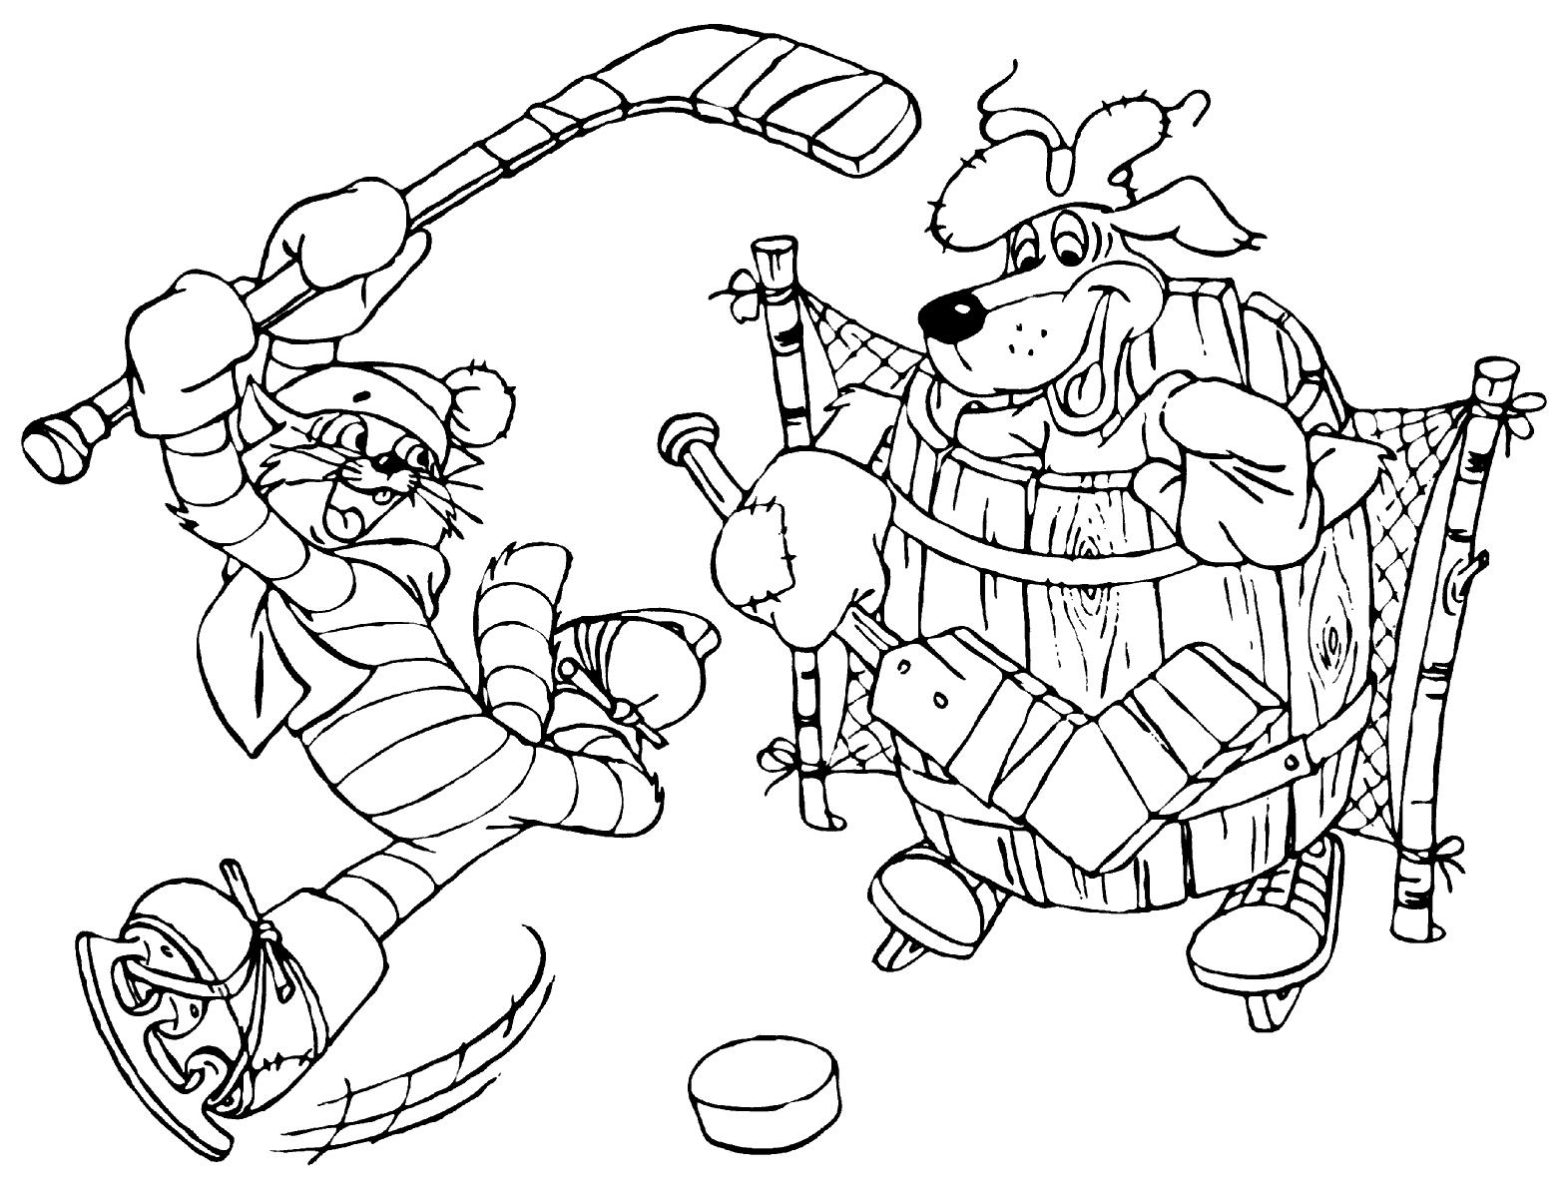 Раскраска с персонажами мультфильма Простоквашино играющими в хоккей на фоне зимнего леса (Простоквашино, хоккей, сказочная, развивающие)